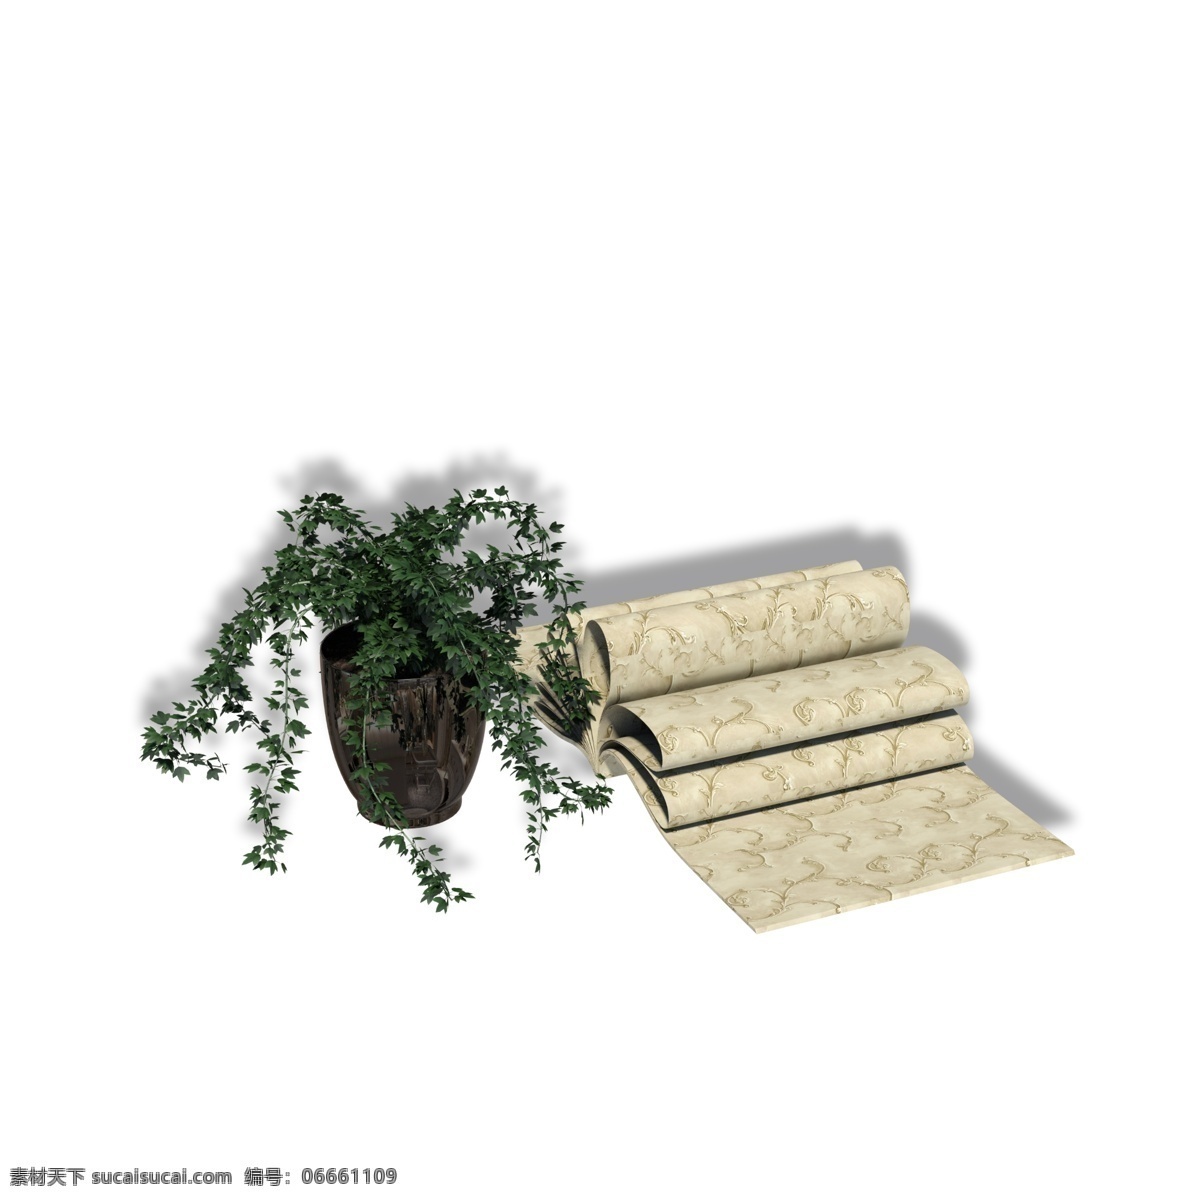 组 实用 装饰 组合 花盆 植物 盆栽 盆景 布料 欧式墙纸